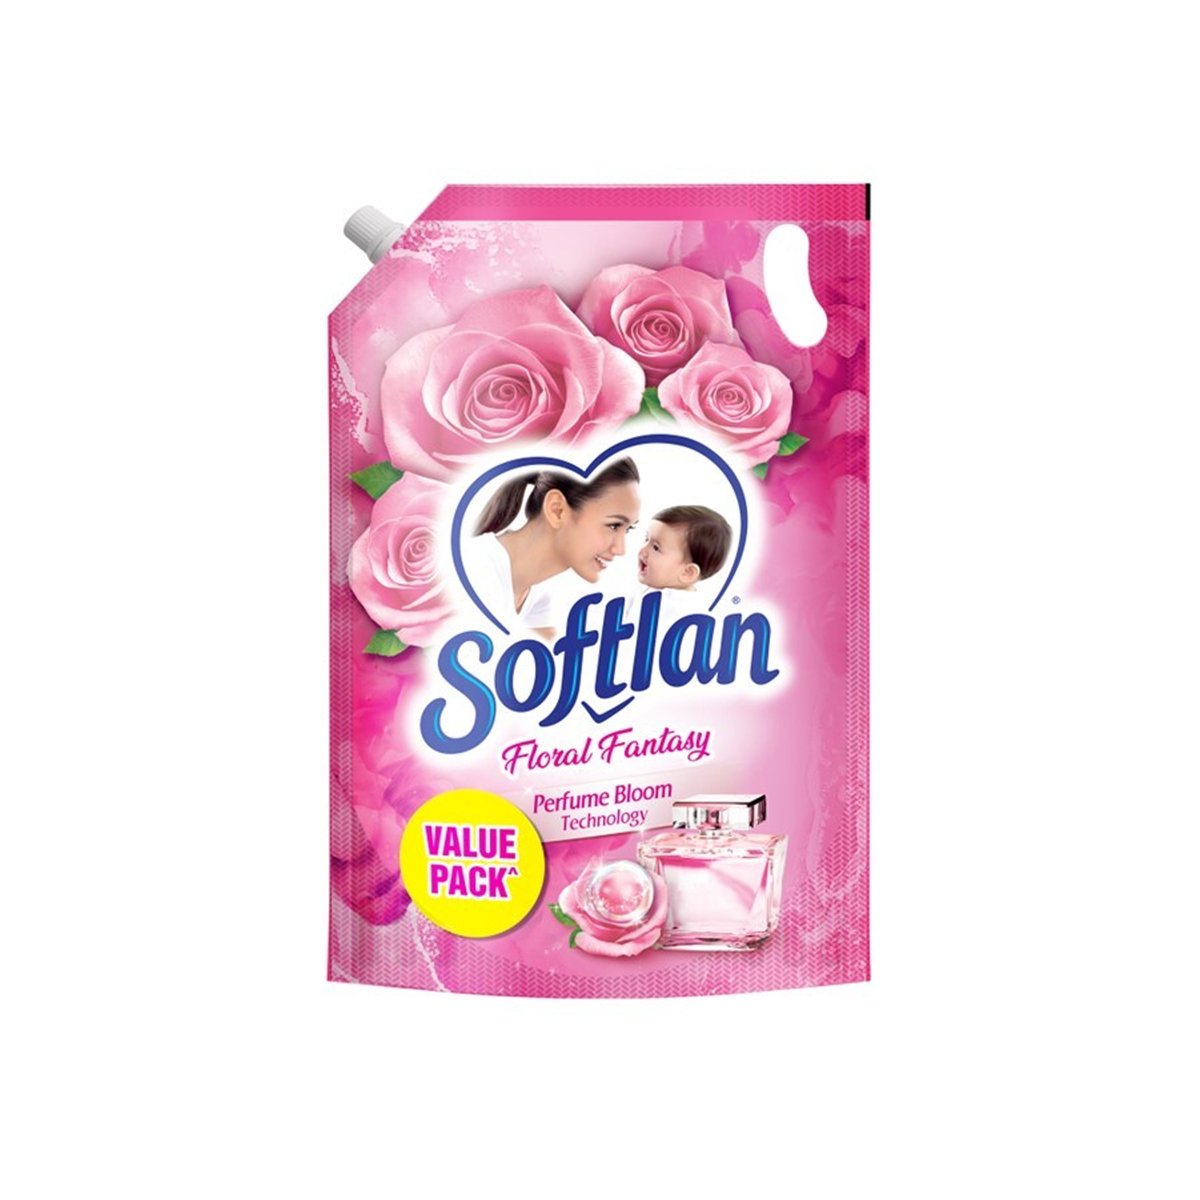 Softlan Floral Fantasy 1.6Liter+200ml